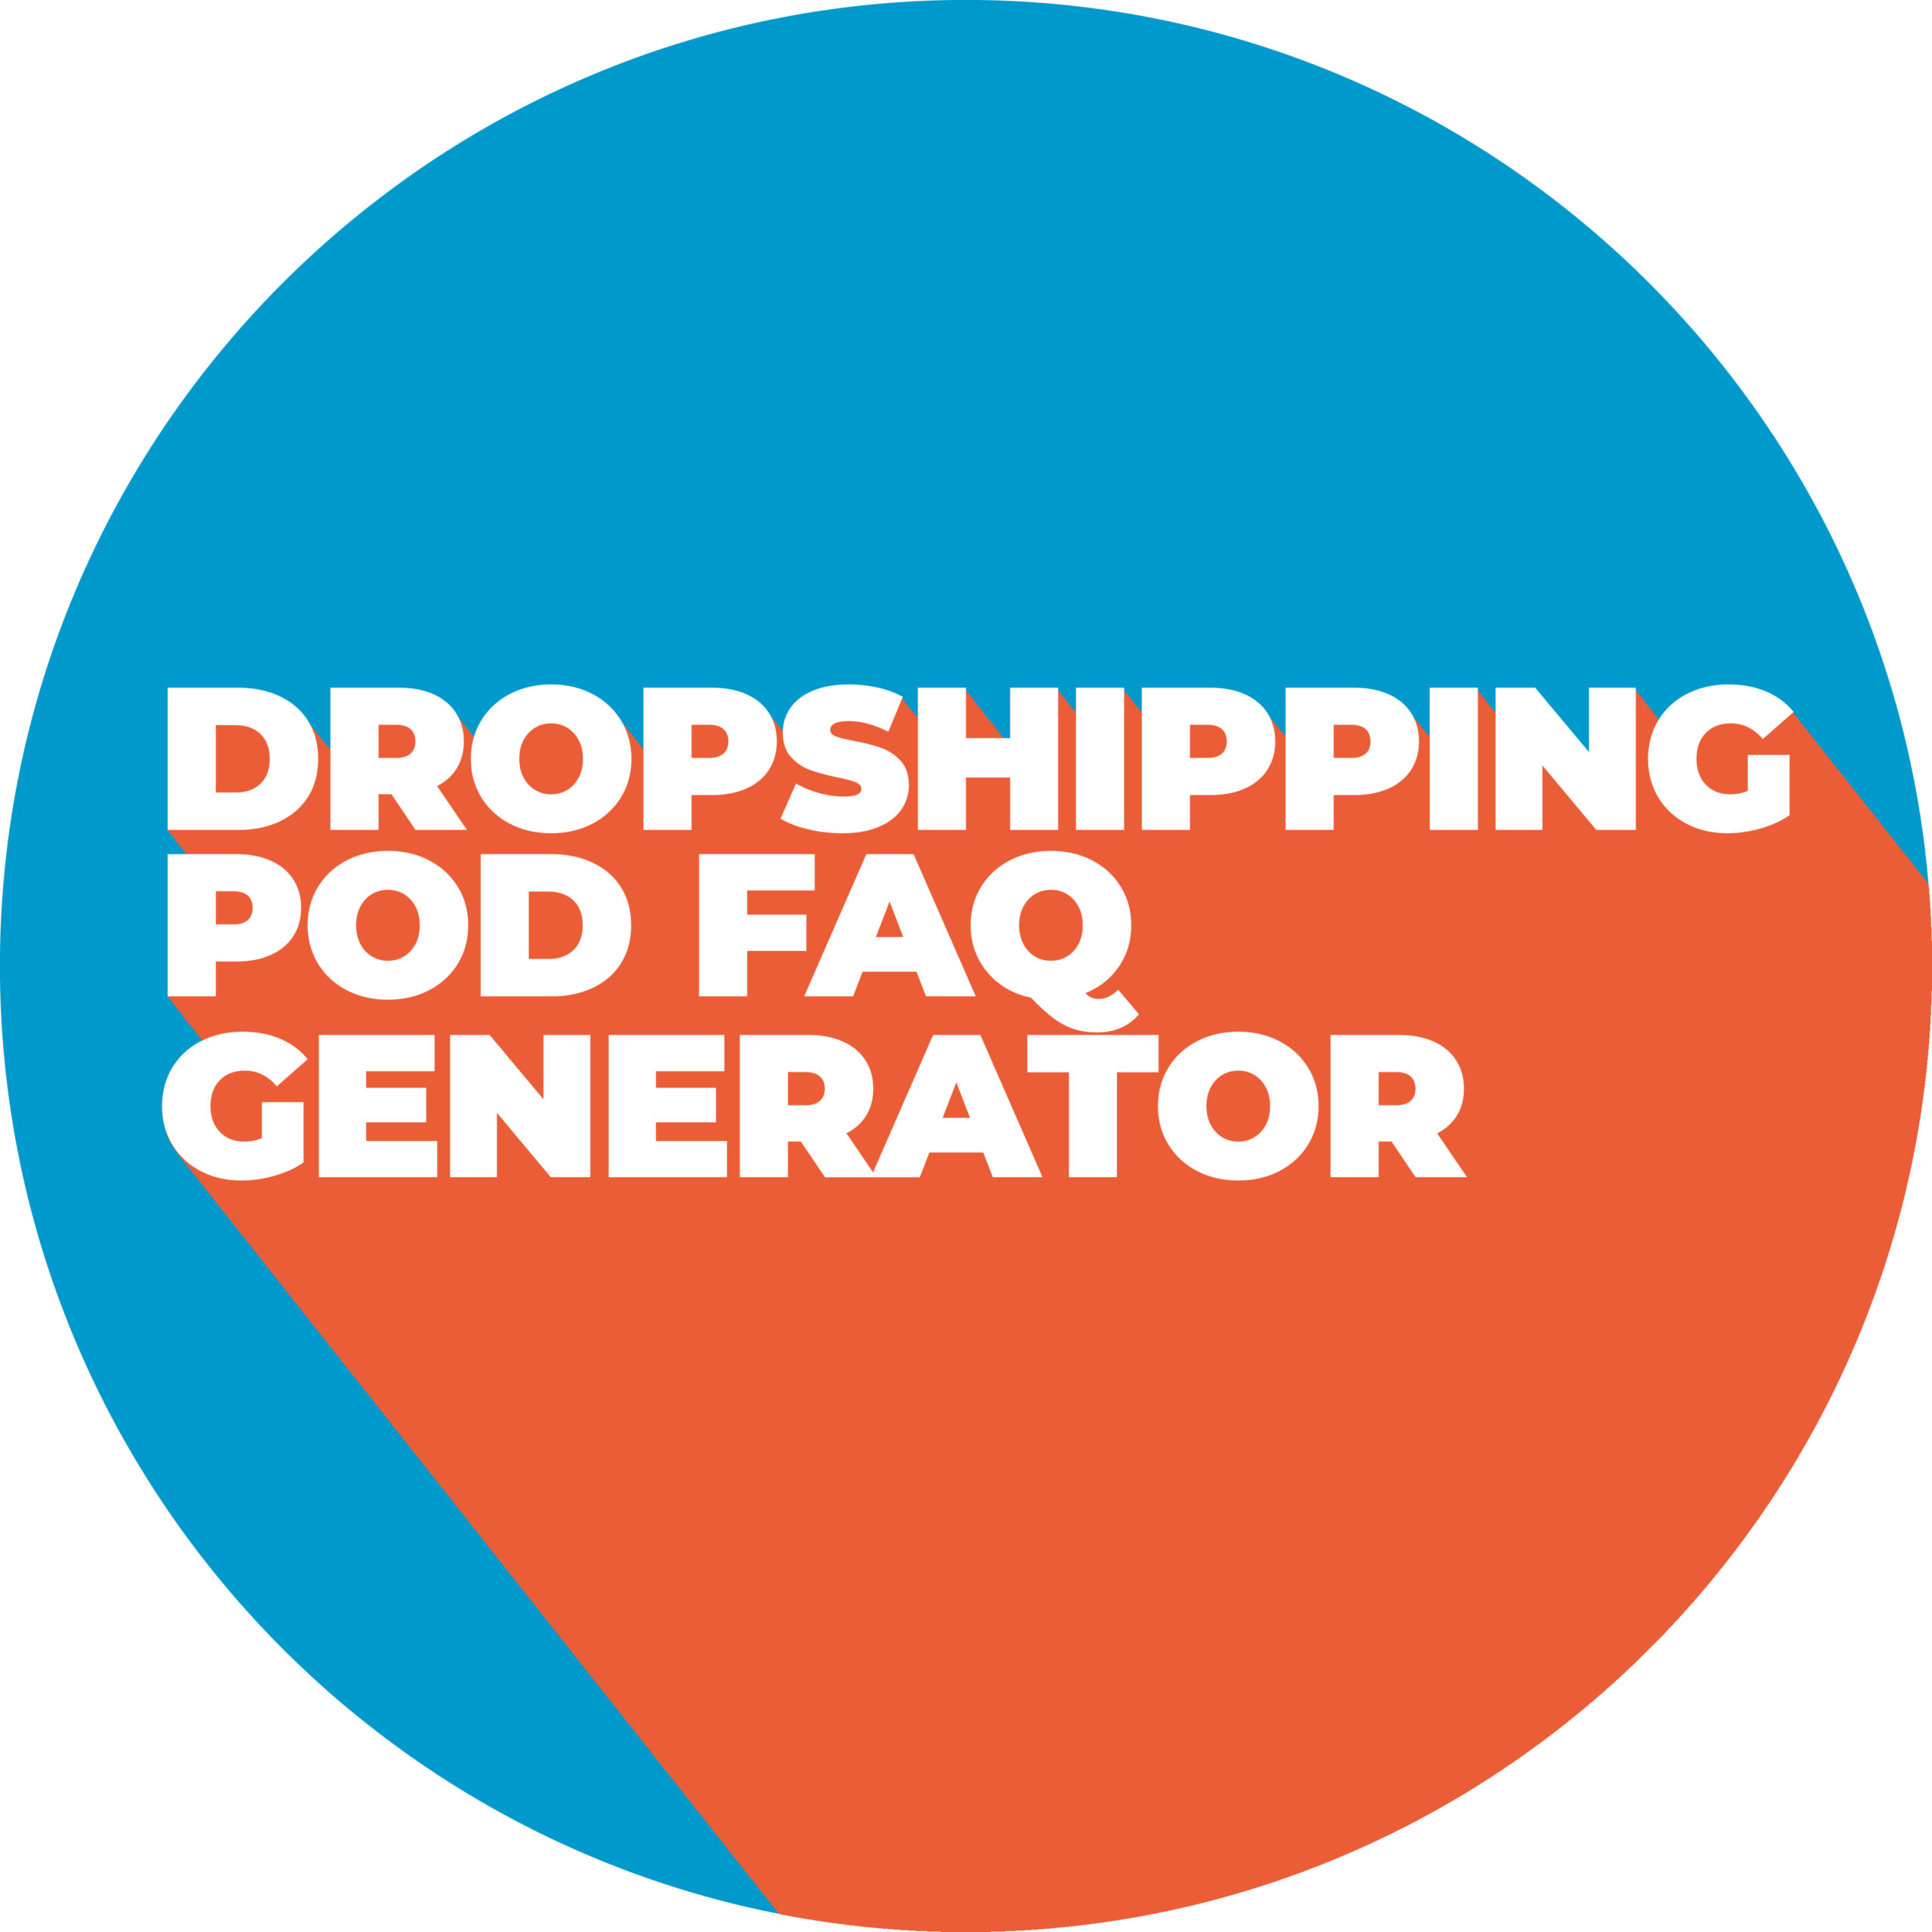 Dropshipping POD FAQ Generator